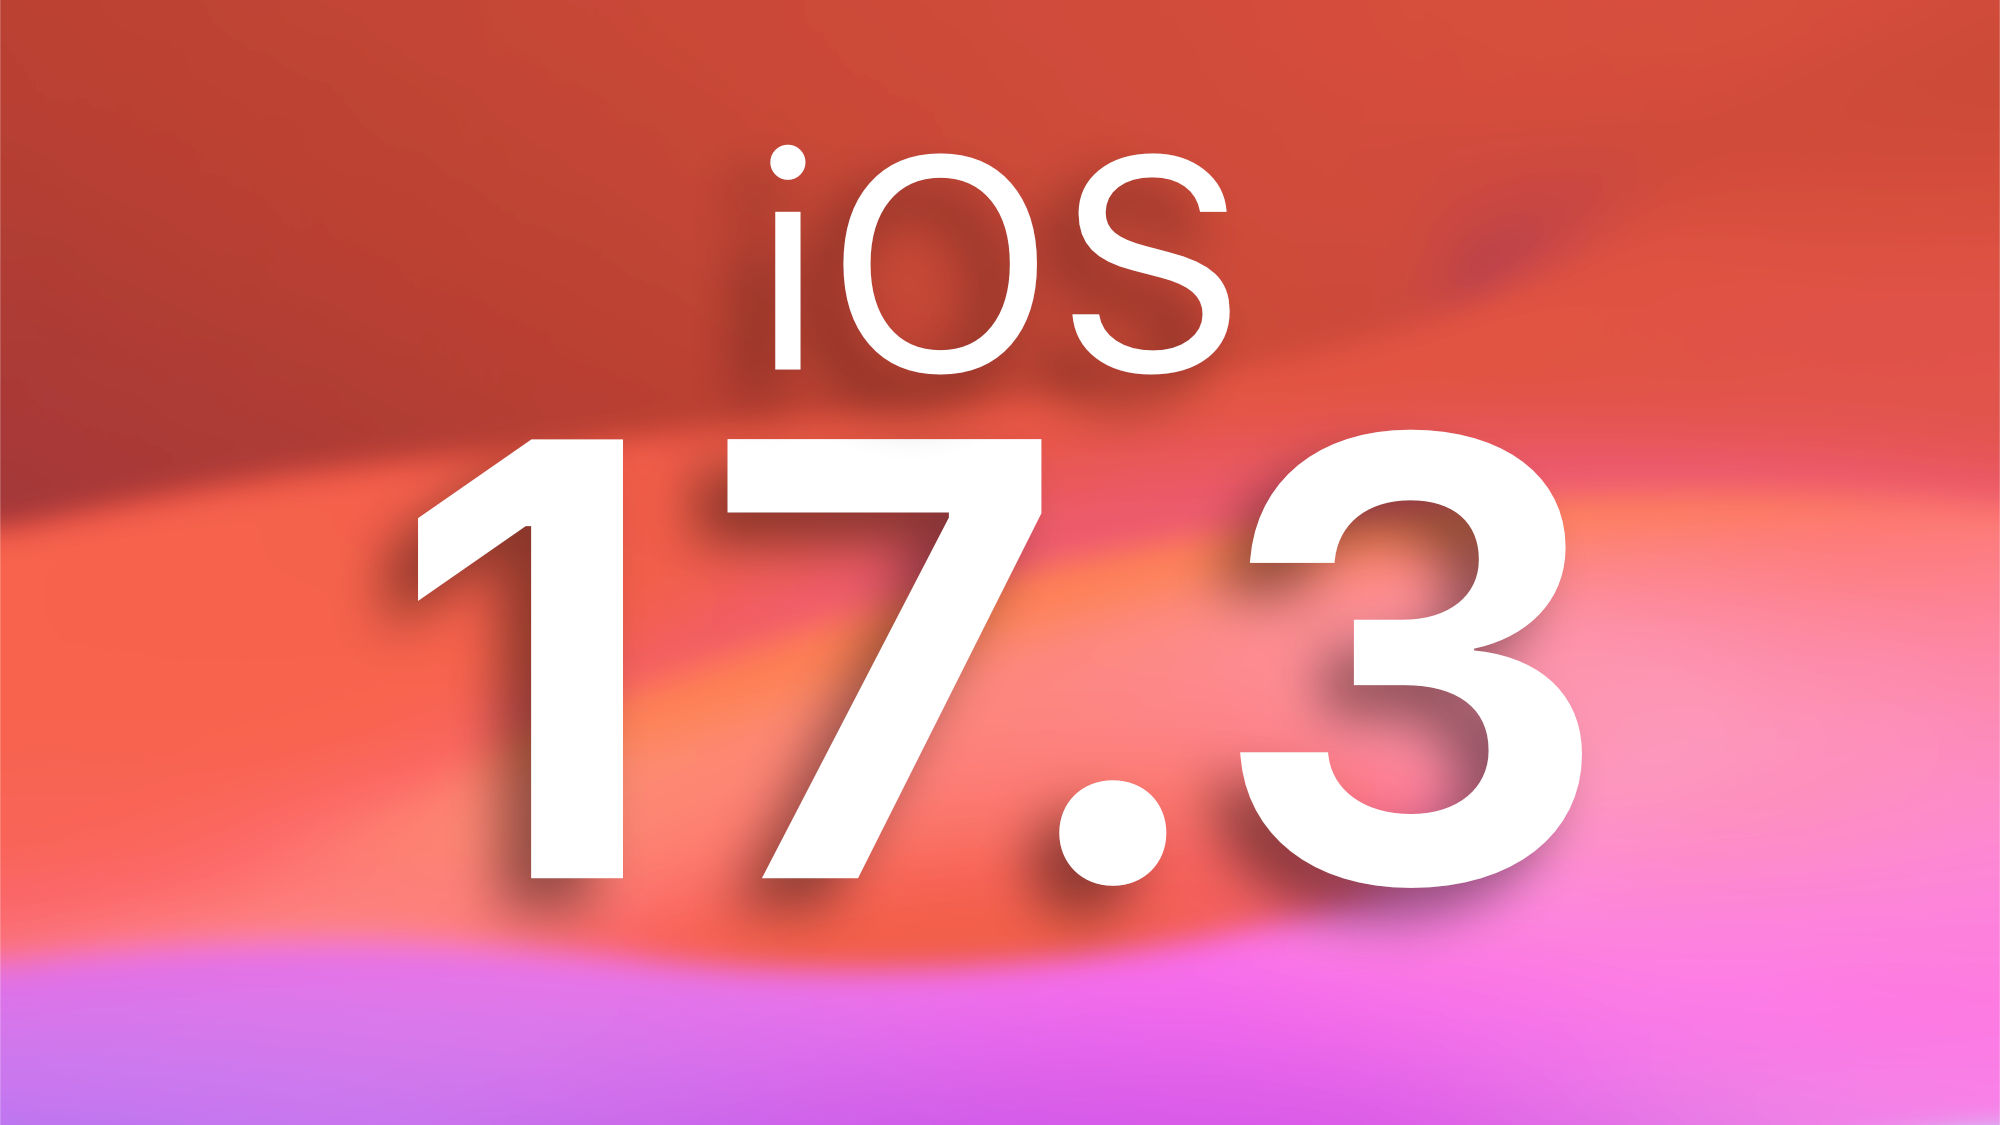 Actualizaciones: iOS 17.3 llega oficialmente con estas 7 novedades